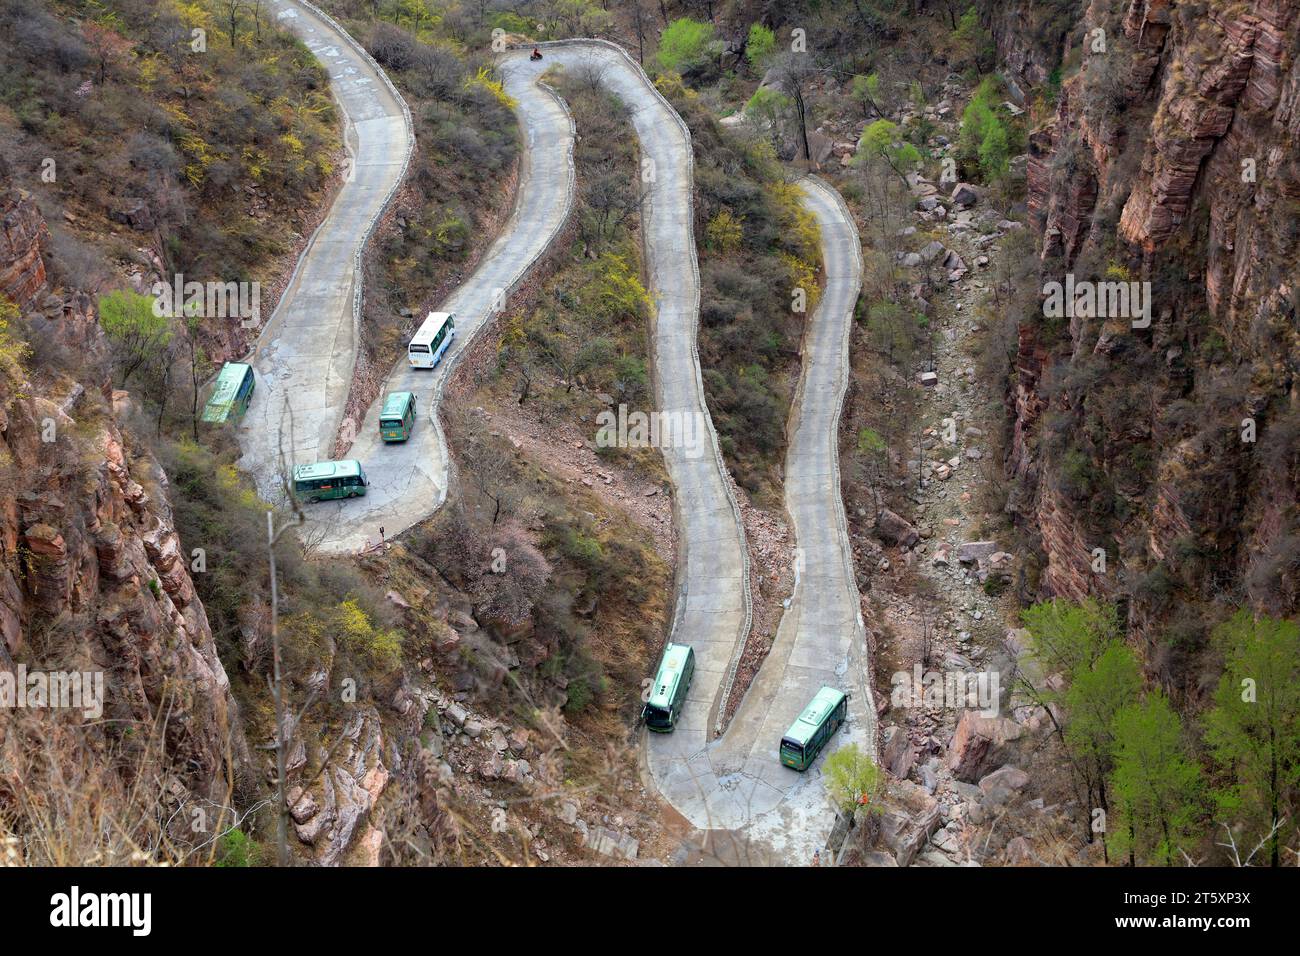 Wanxian mountain Scenic spot winding road, China Stock Photo